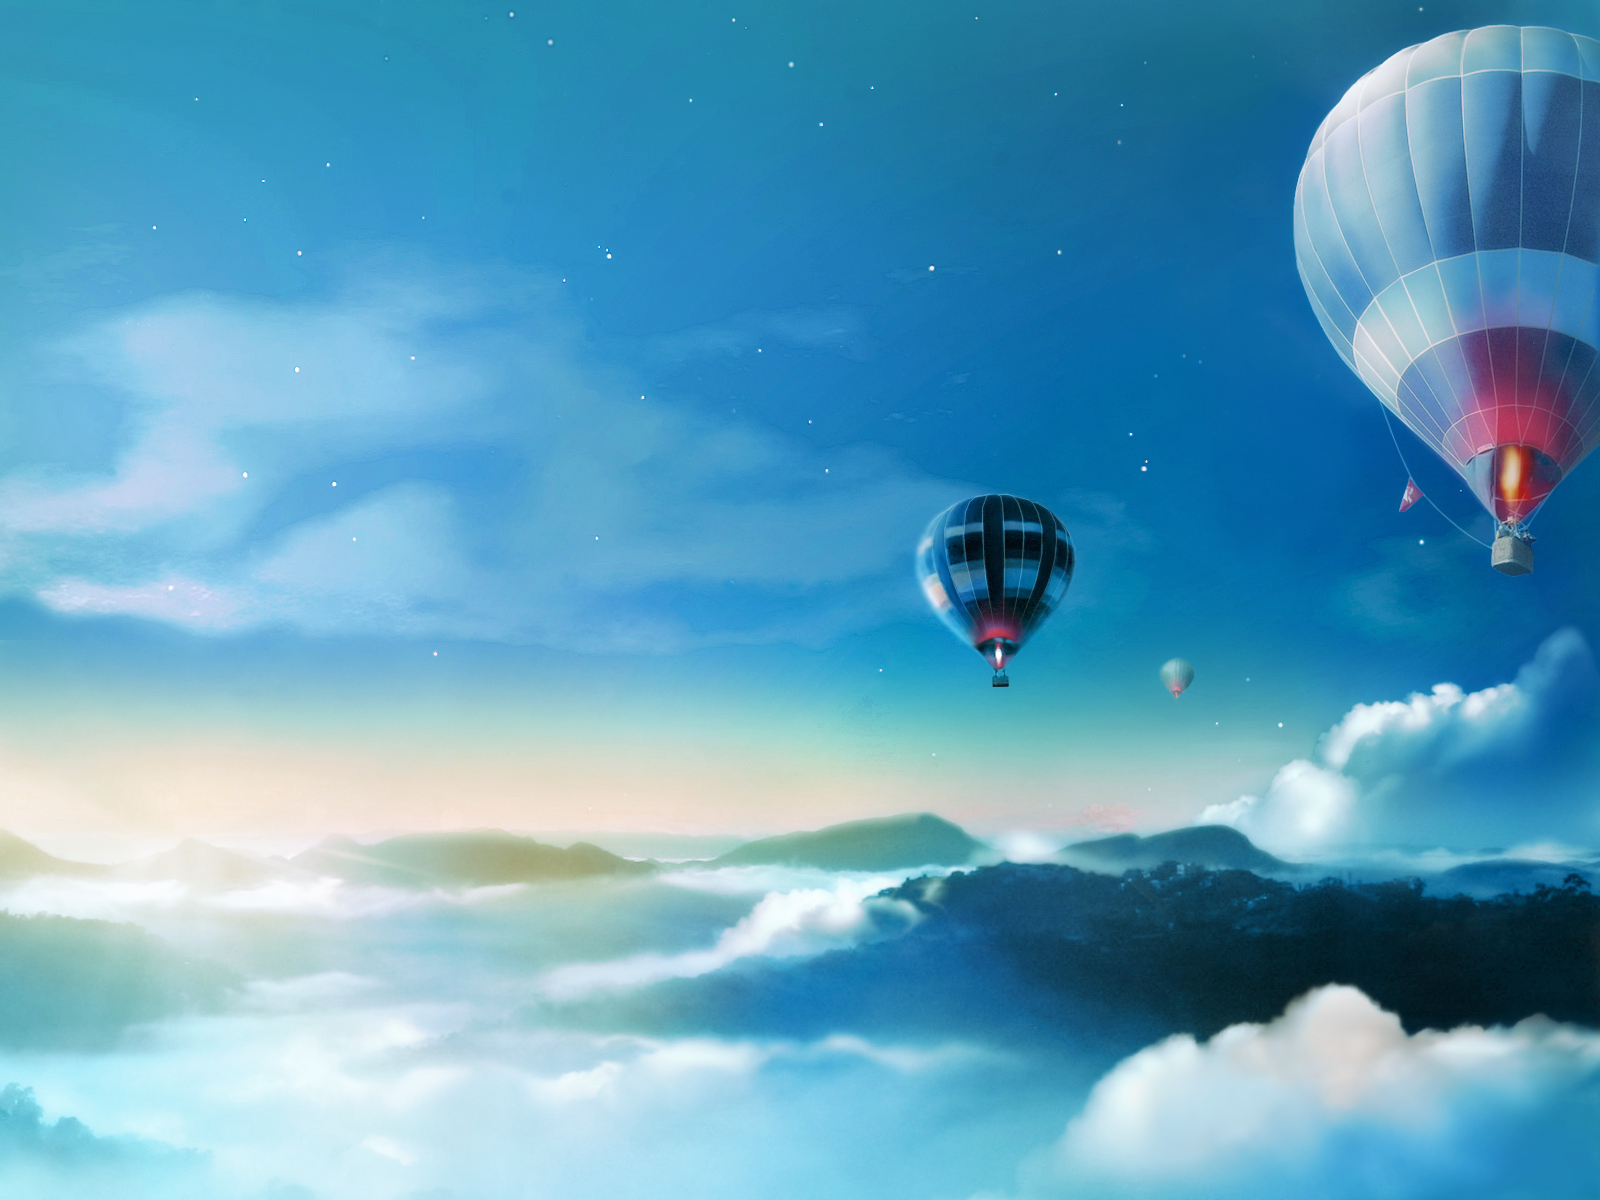 クラロ壁紙,熱気球,熱気球,空,雰囲気,雲